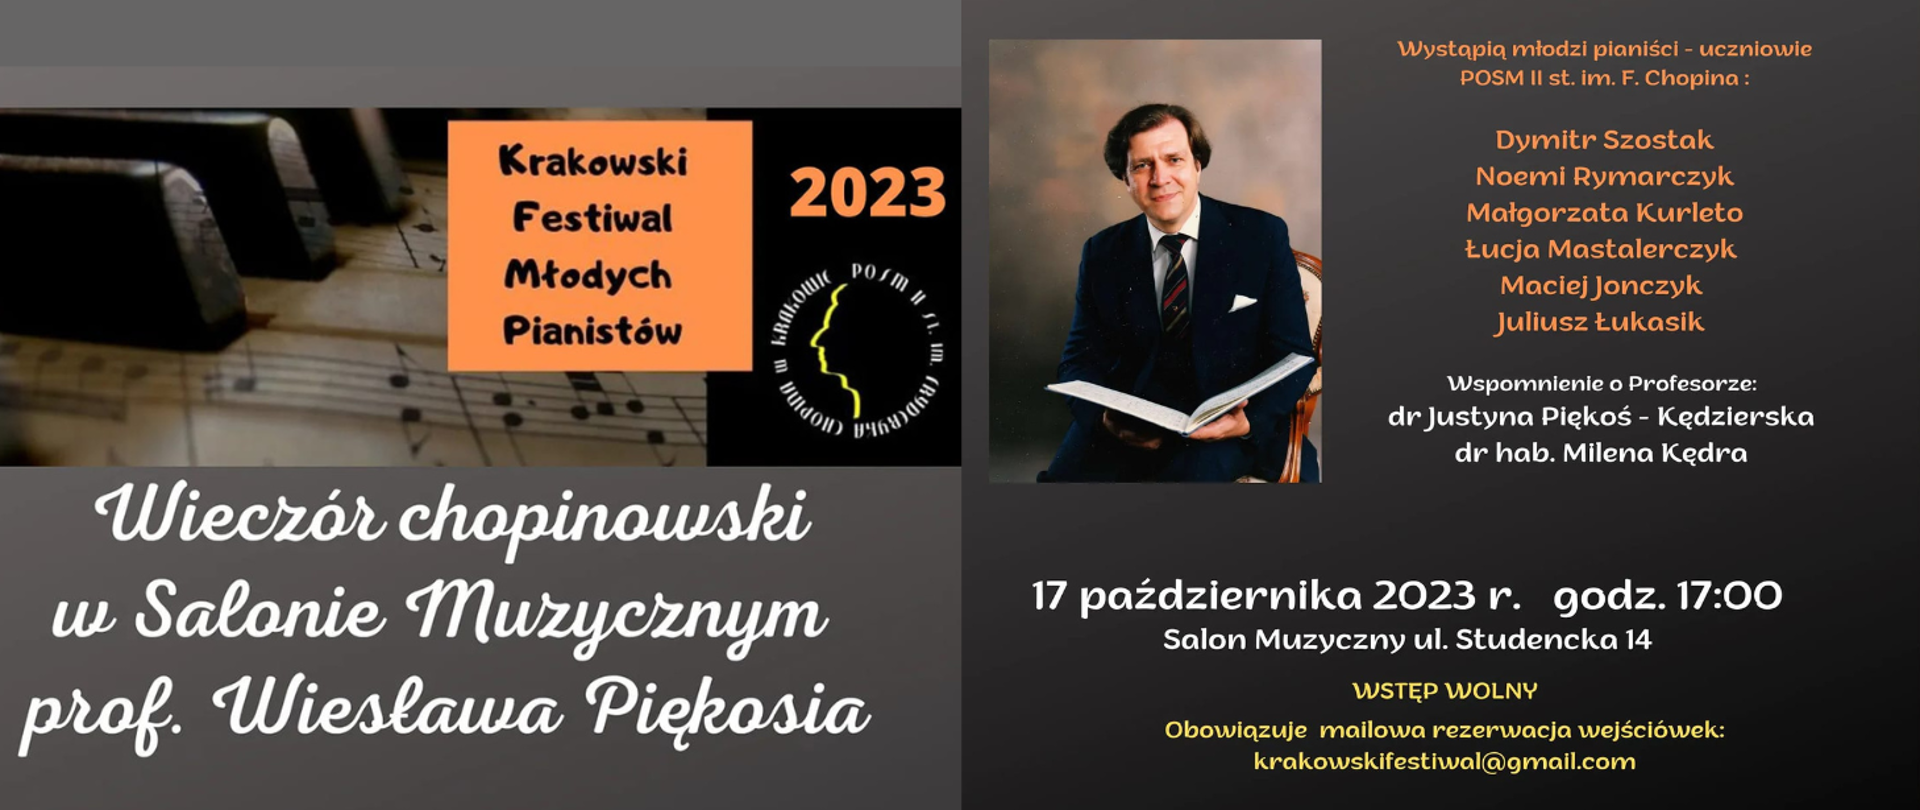 Plakat koncertu; po lewej stronie grafika, logo szkoły oraz logo Krakowskiego Festiwalu Młodych Pianistów; po prawej zdjęcie profesora, lista wykonawców i prelegentów oraz informacja o miejscu i czasie wydarzenia